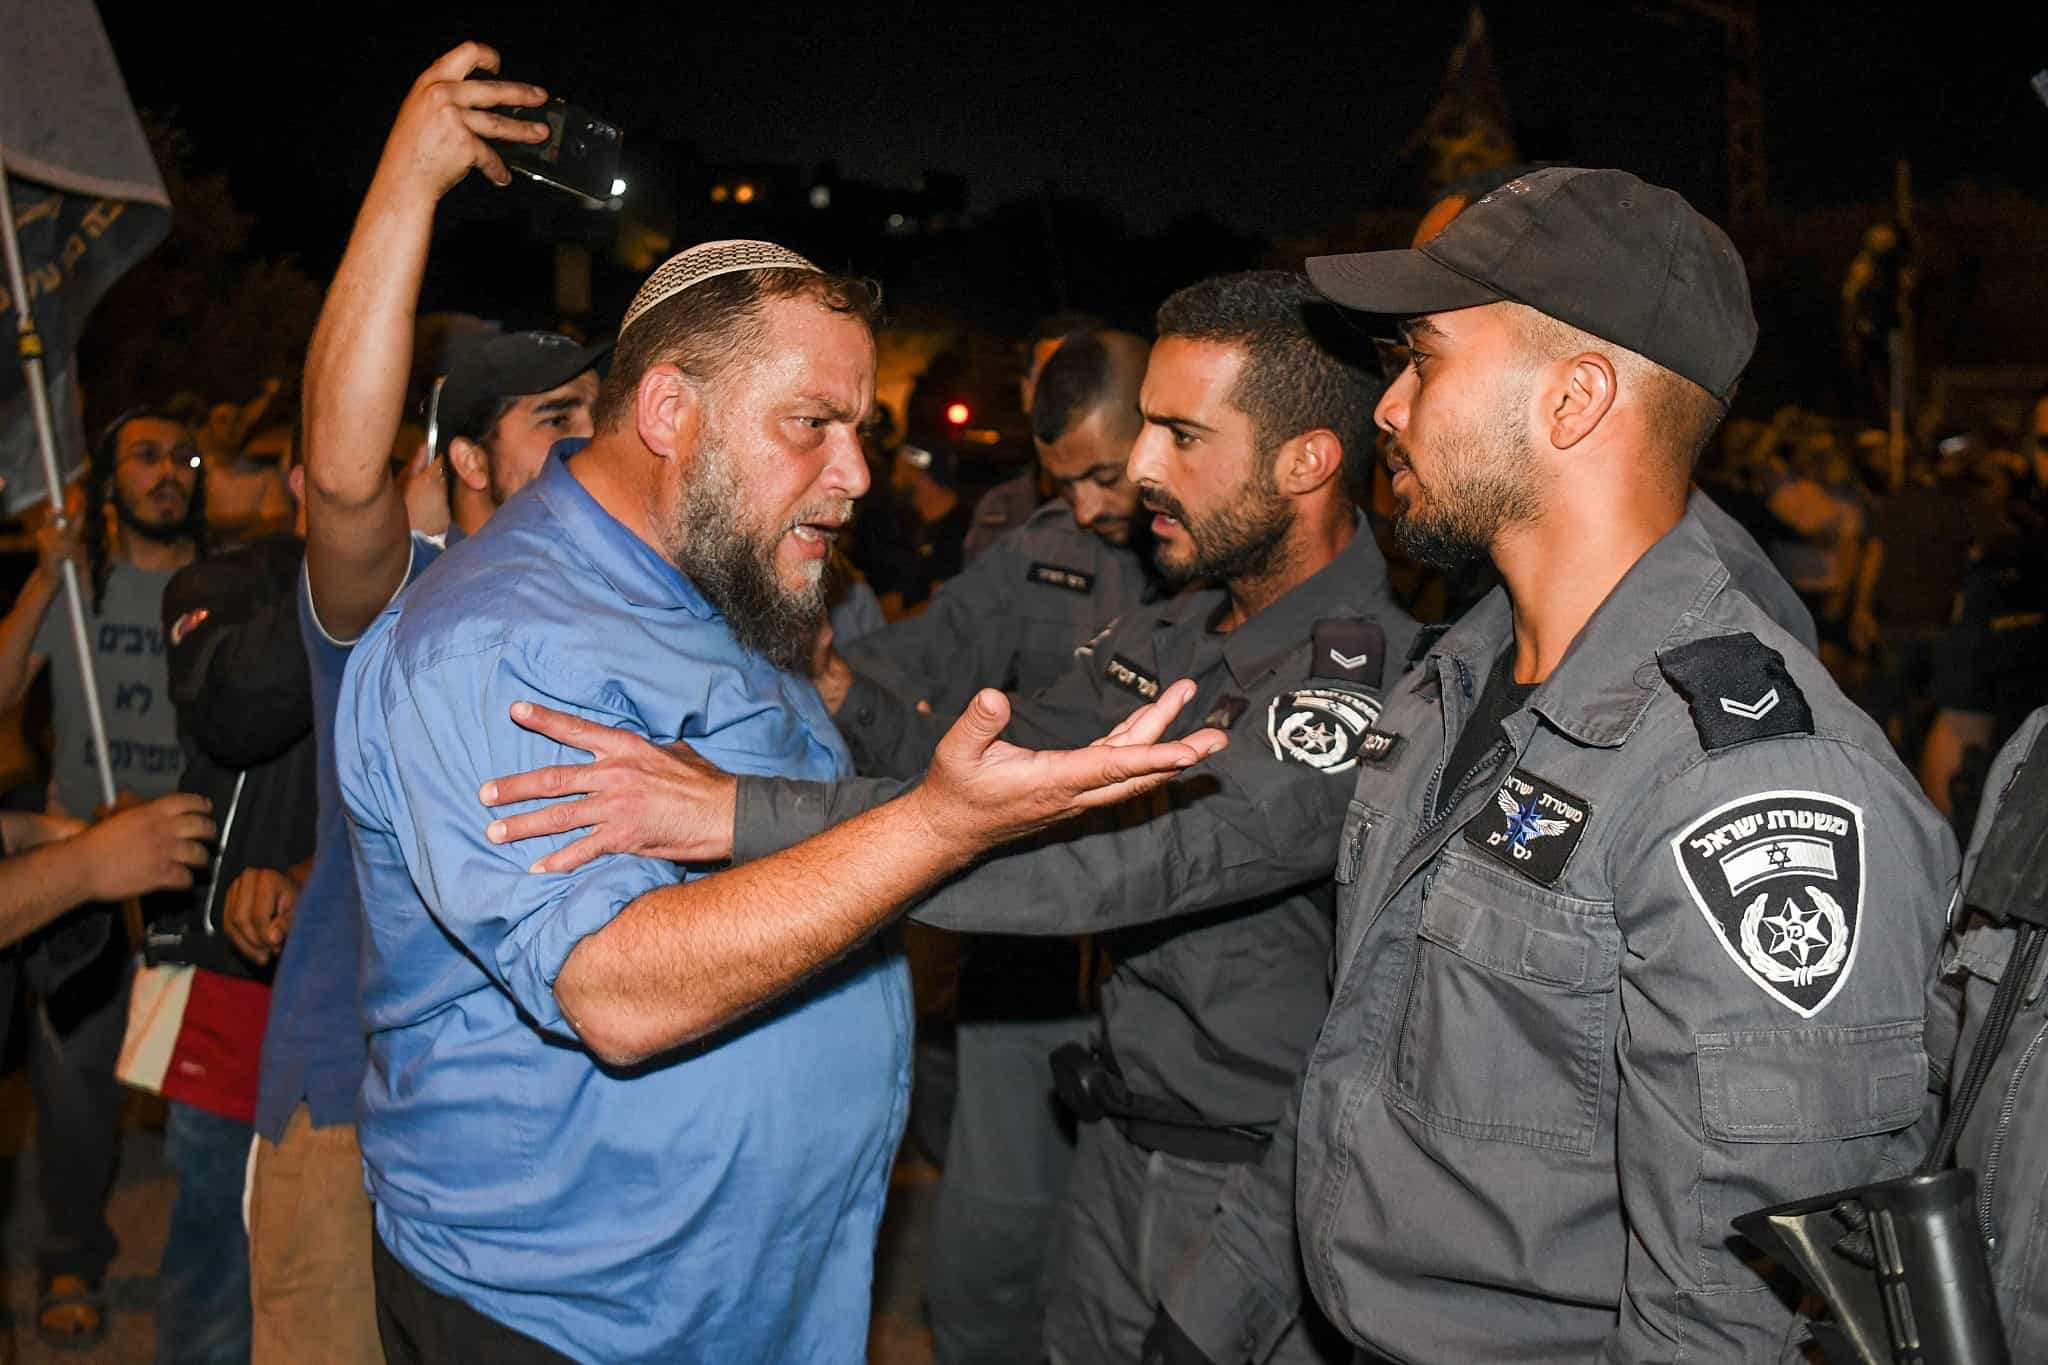 בנצ׳י גופשטיין ופעילים מתווכחים עם שוטרים במהלך מחאה נגד פלסטיני שחשוד בחטיפה ואונס של ילדה בת 7 (צילום: Flash90)